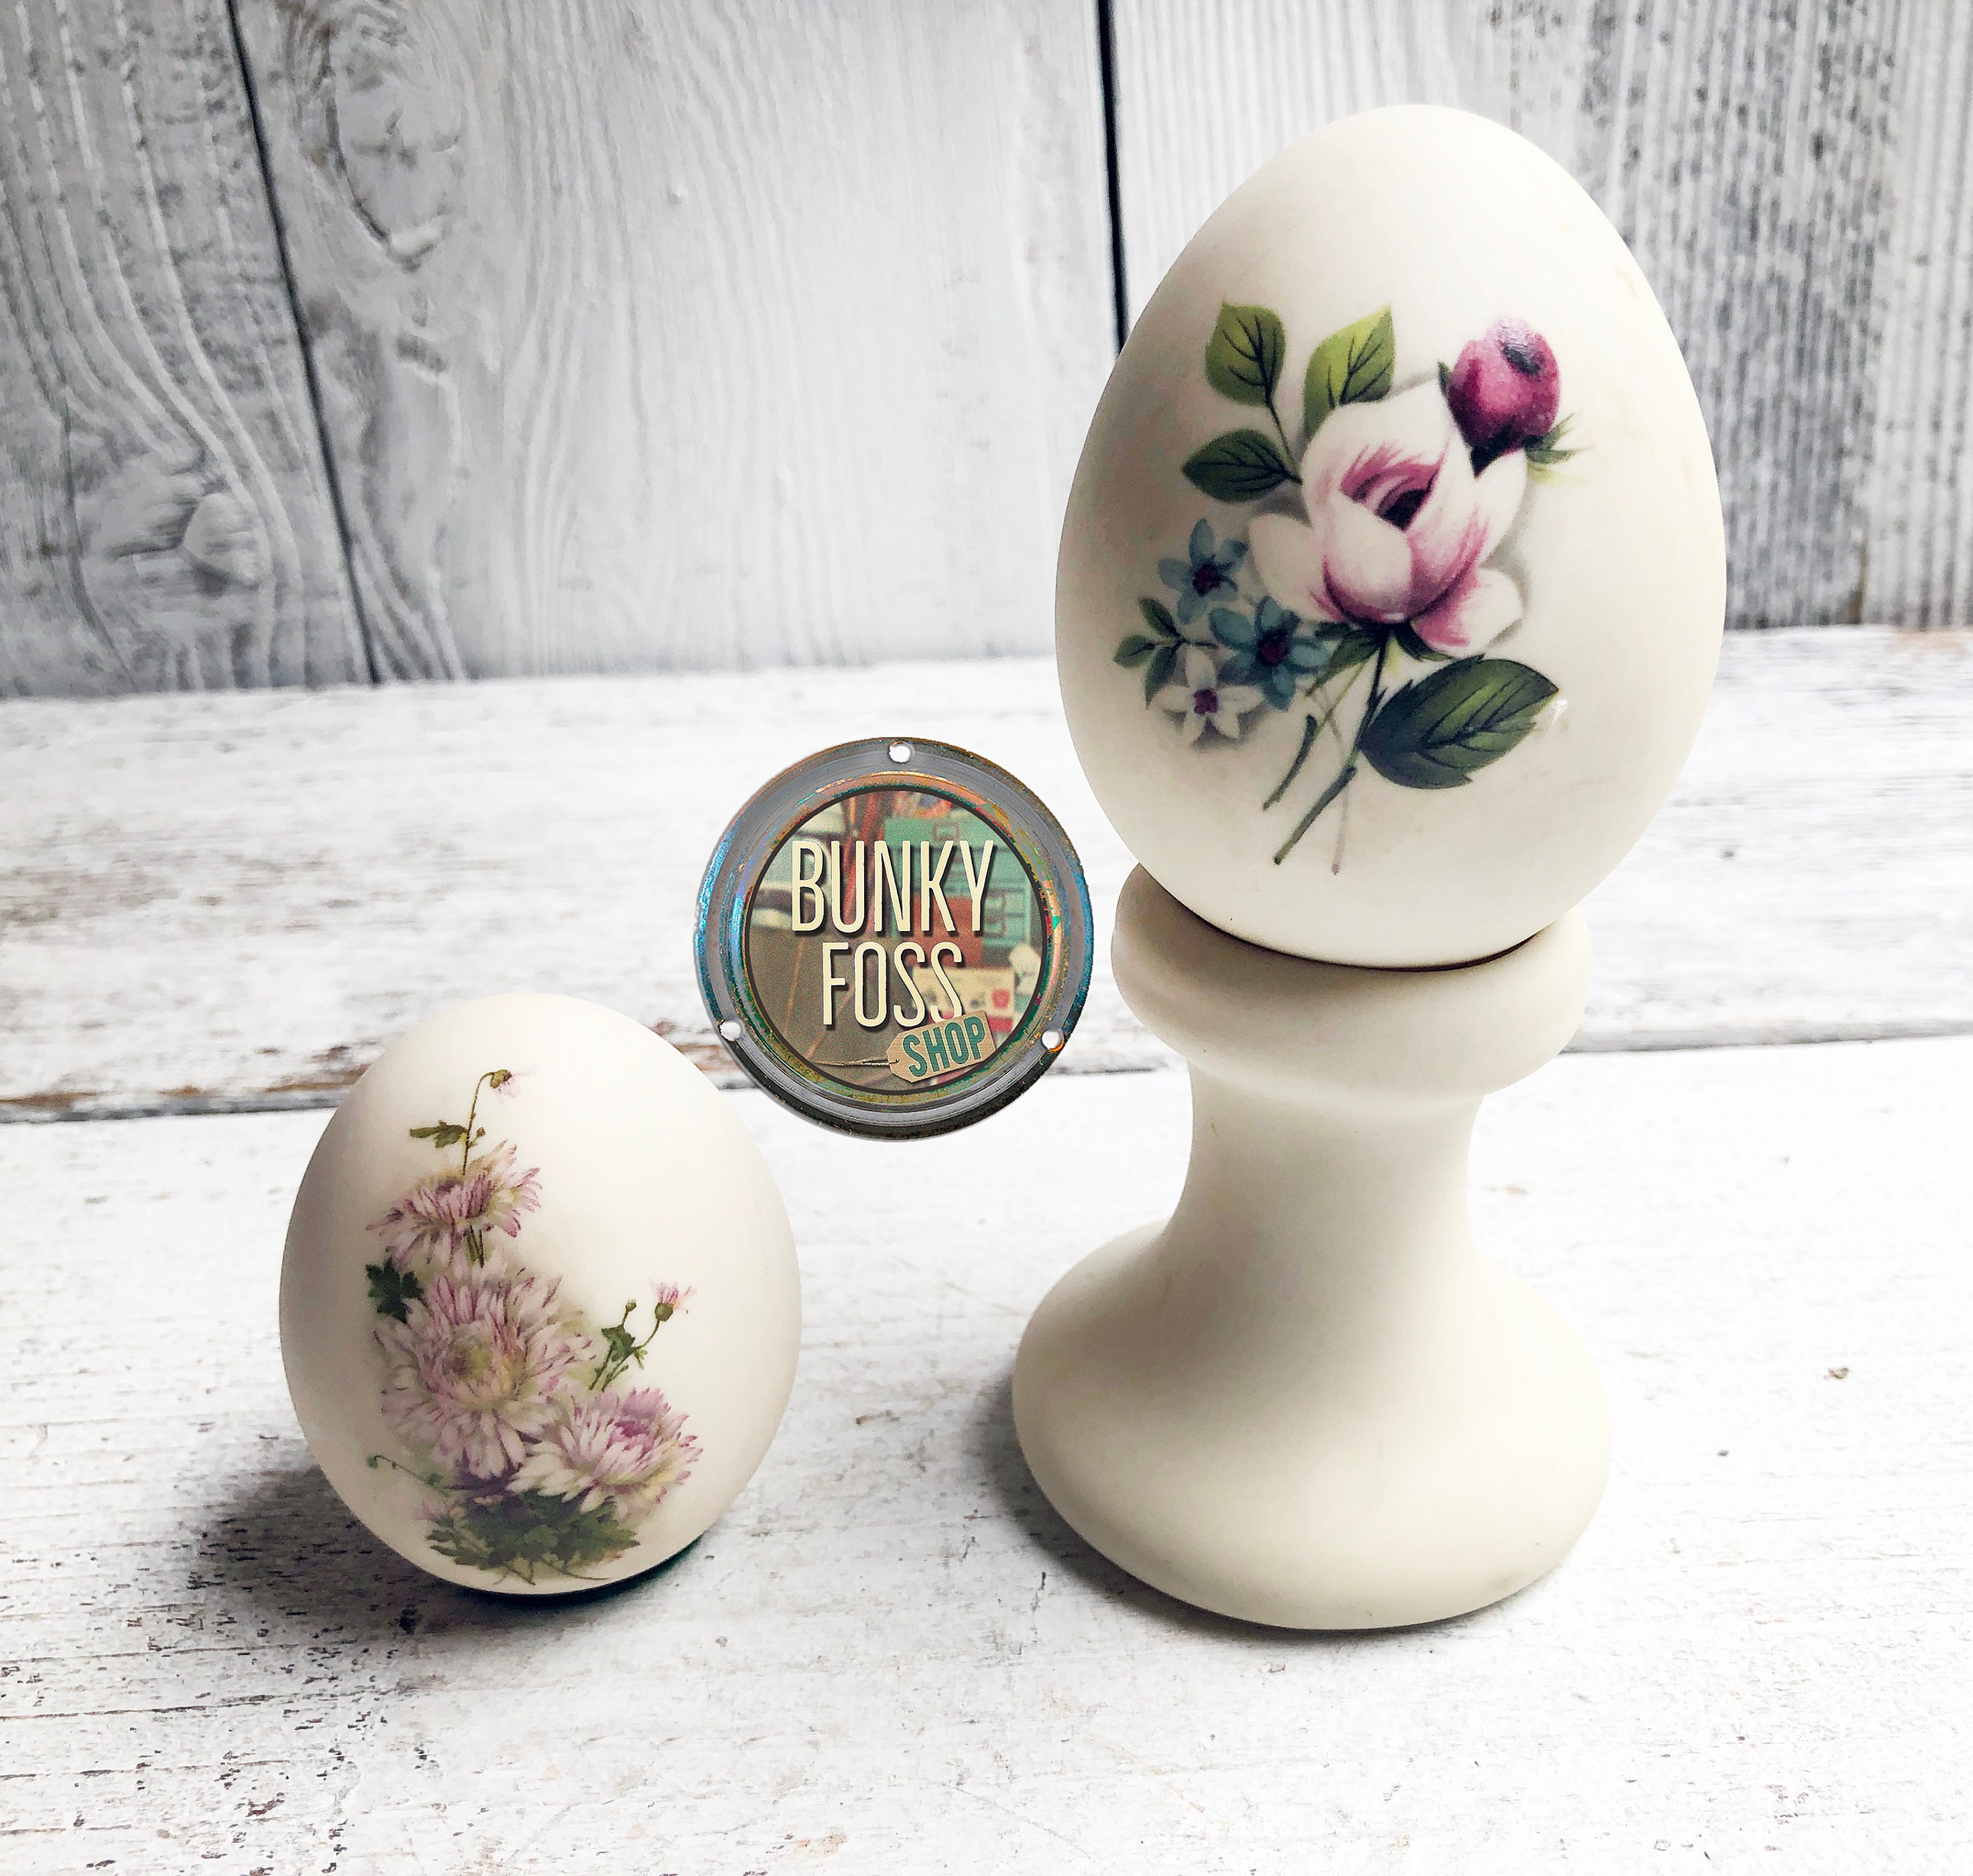 Porcelain Egg Coddler - White - The Foundry Home Goods